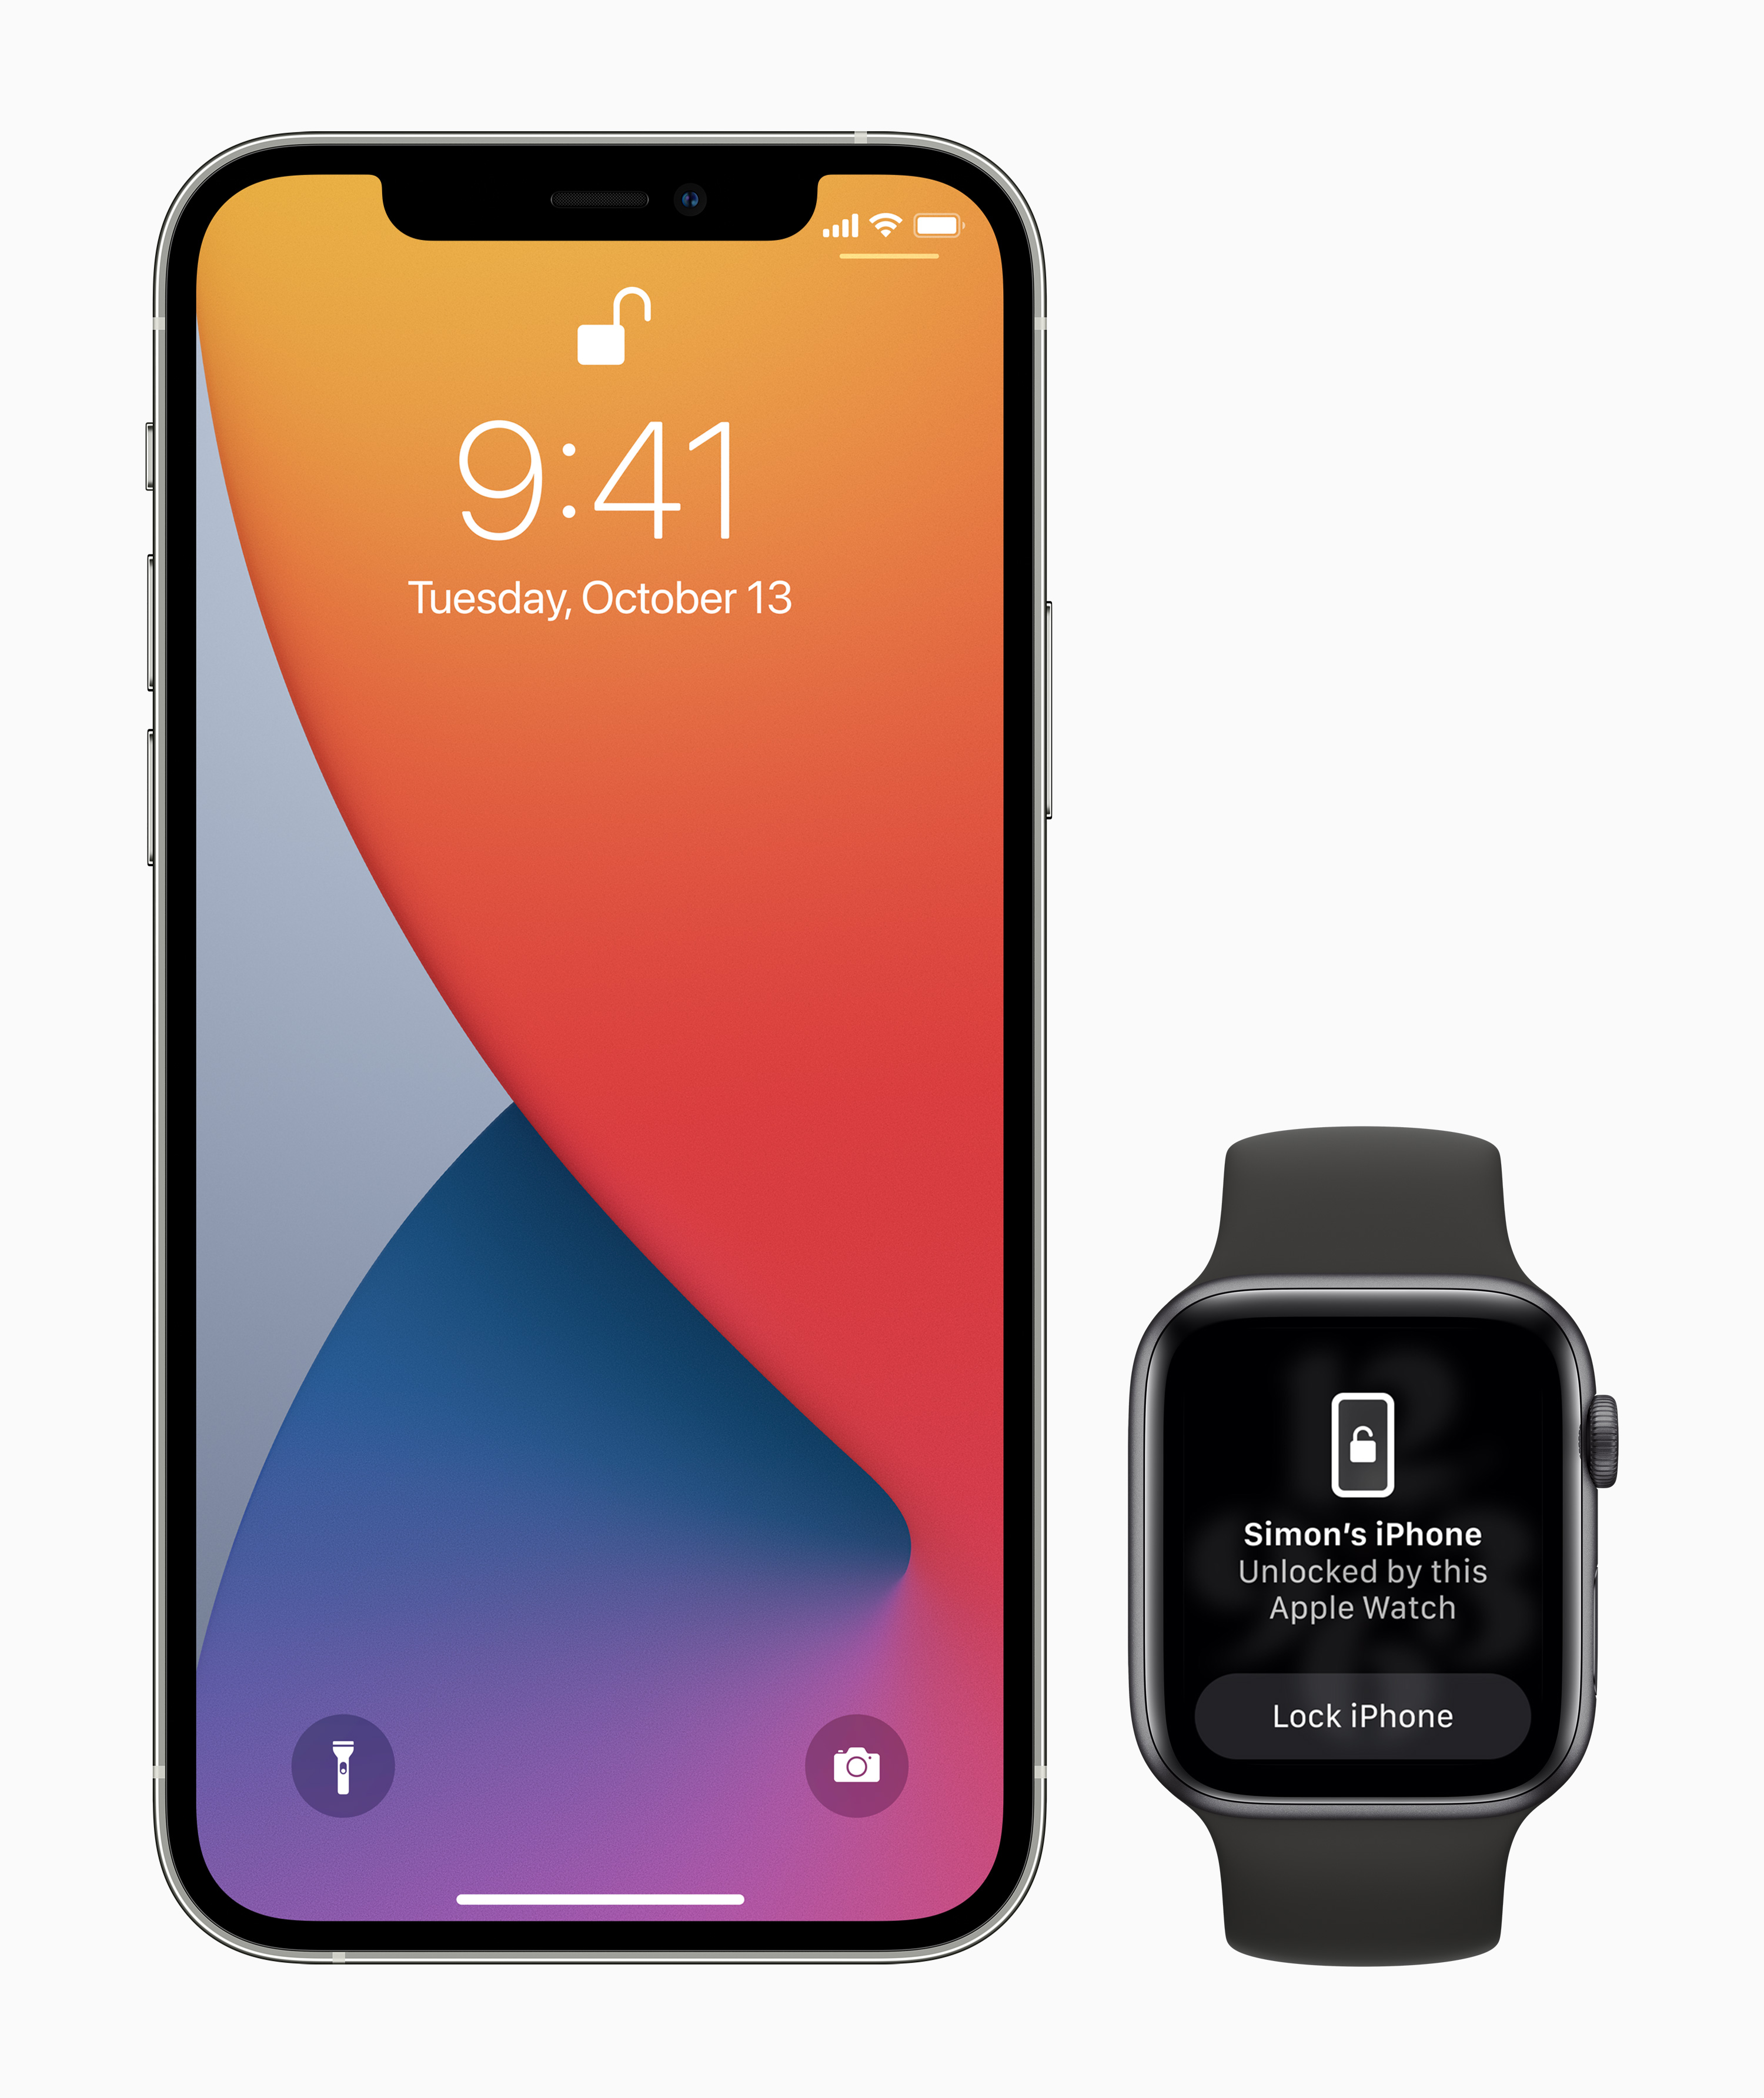 An iPhone unlocked using an Apple Watch